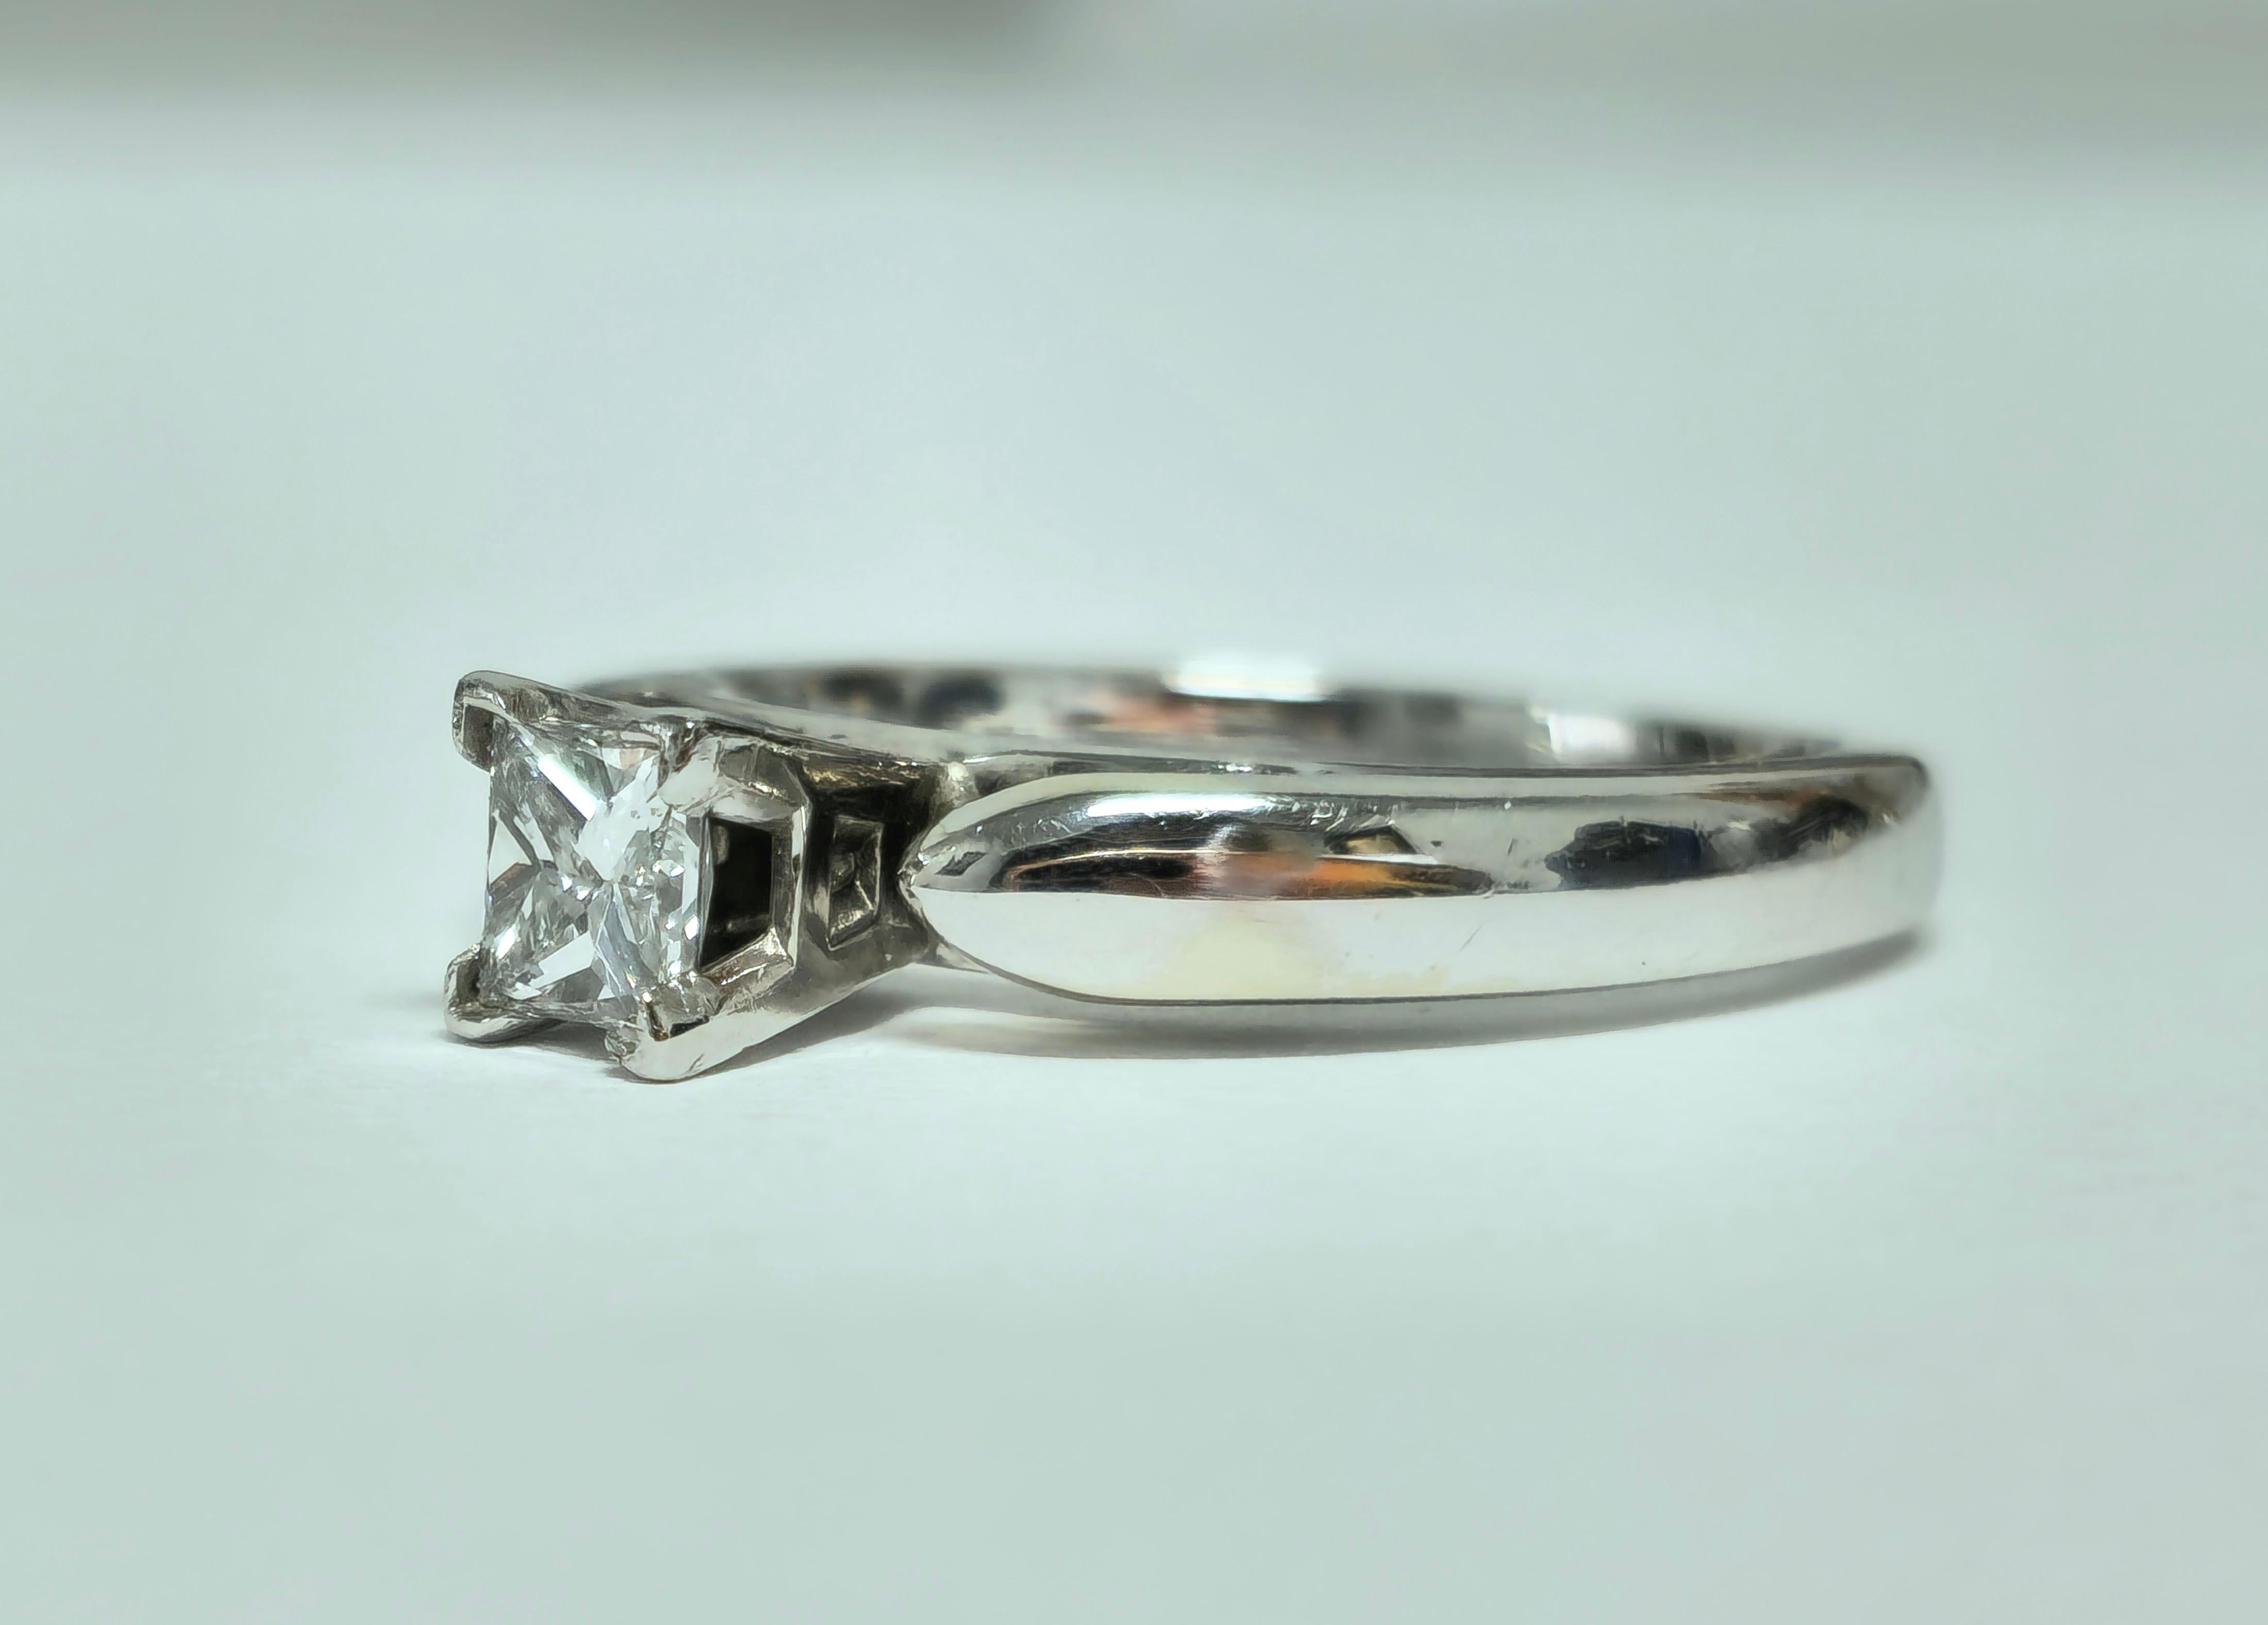 Heben Sie Ihren Antrag mit unserem klassischen Solitär-Diamant-Verlobungsring aus schimmerndem 14-karätigem Weißgold hervor. Mit einem schillernden Diamanten im Prinzessinnenschliff von 0,41 Karat strahlt dieser Ring zeitlose Eleganz und Raffinesse